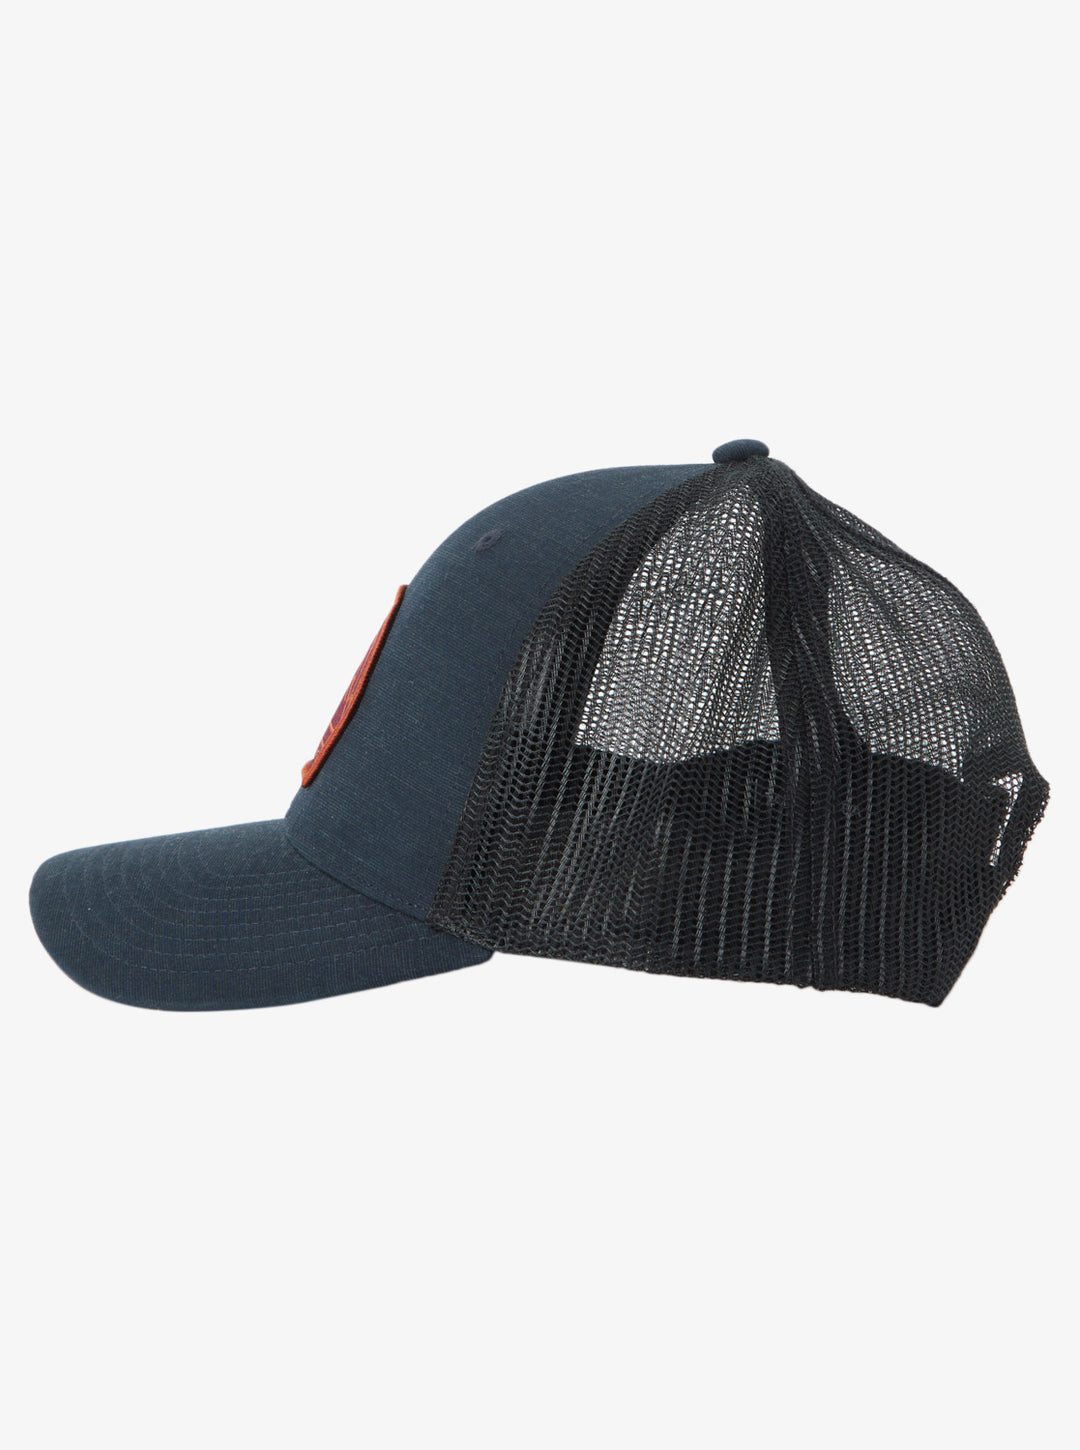 Quiksilver Loose Bait Trucker Hat - Black – Sun Diego Boardshop